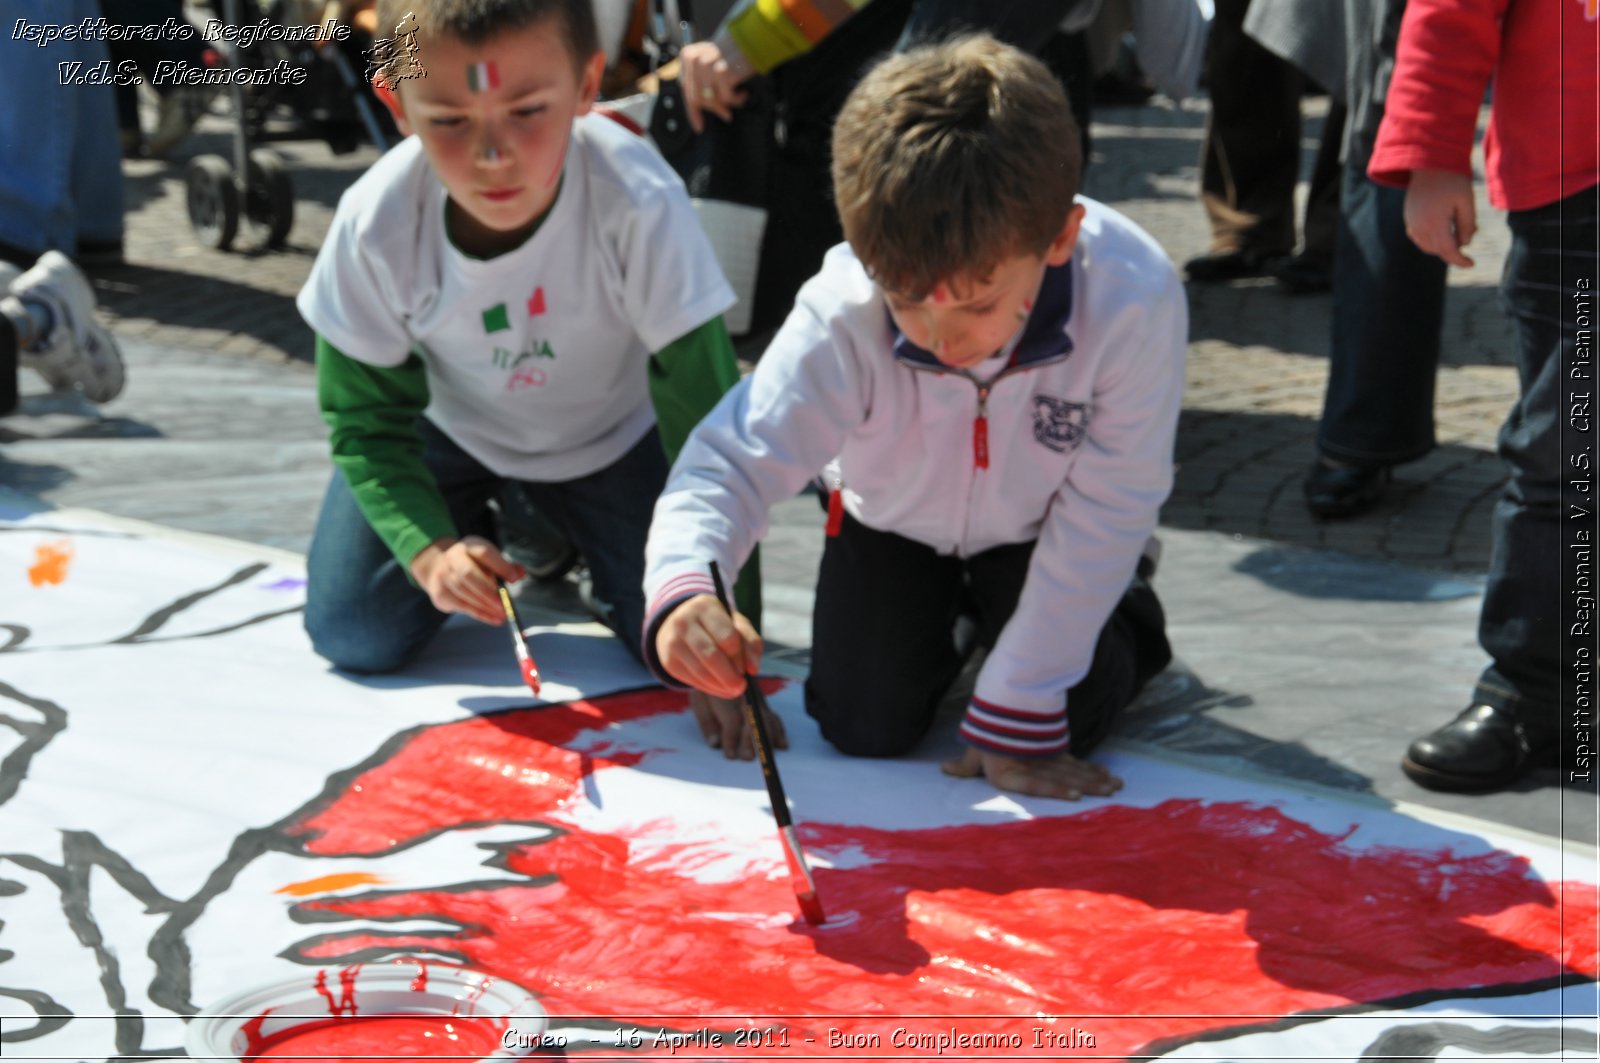 Cuneo - 16 Aprile 2011 - Buon Compleanno Italia  -  Croce Rossa Italiana - Ispettorato Regionale Volontari del Soccorso Piemonte